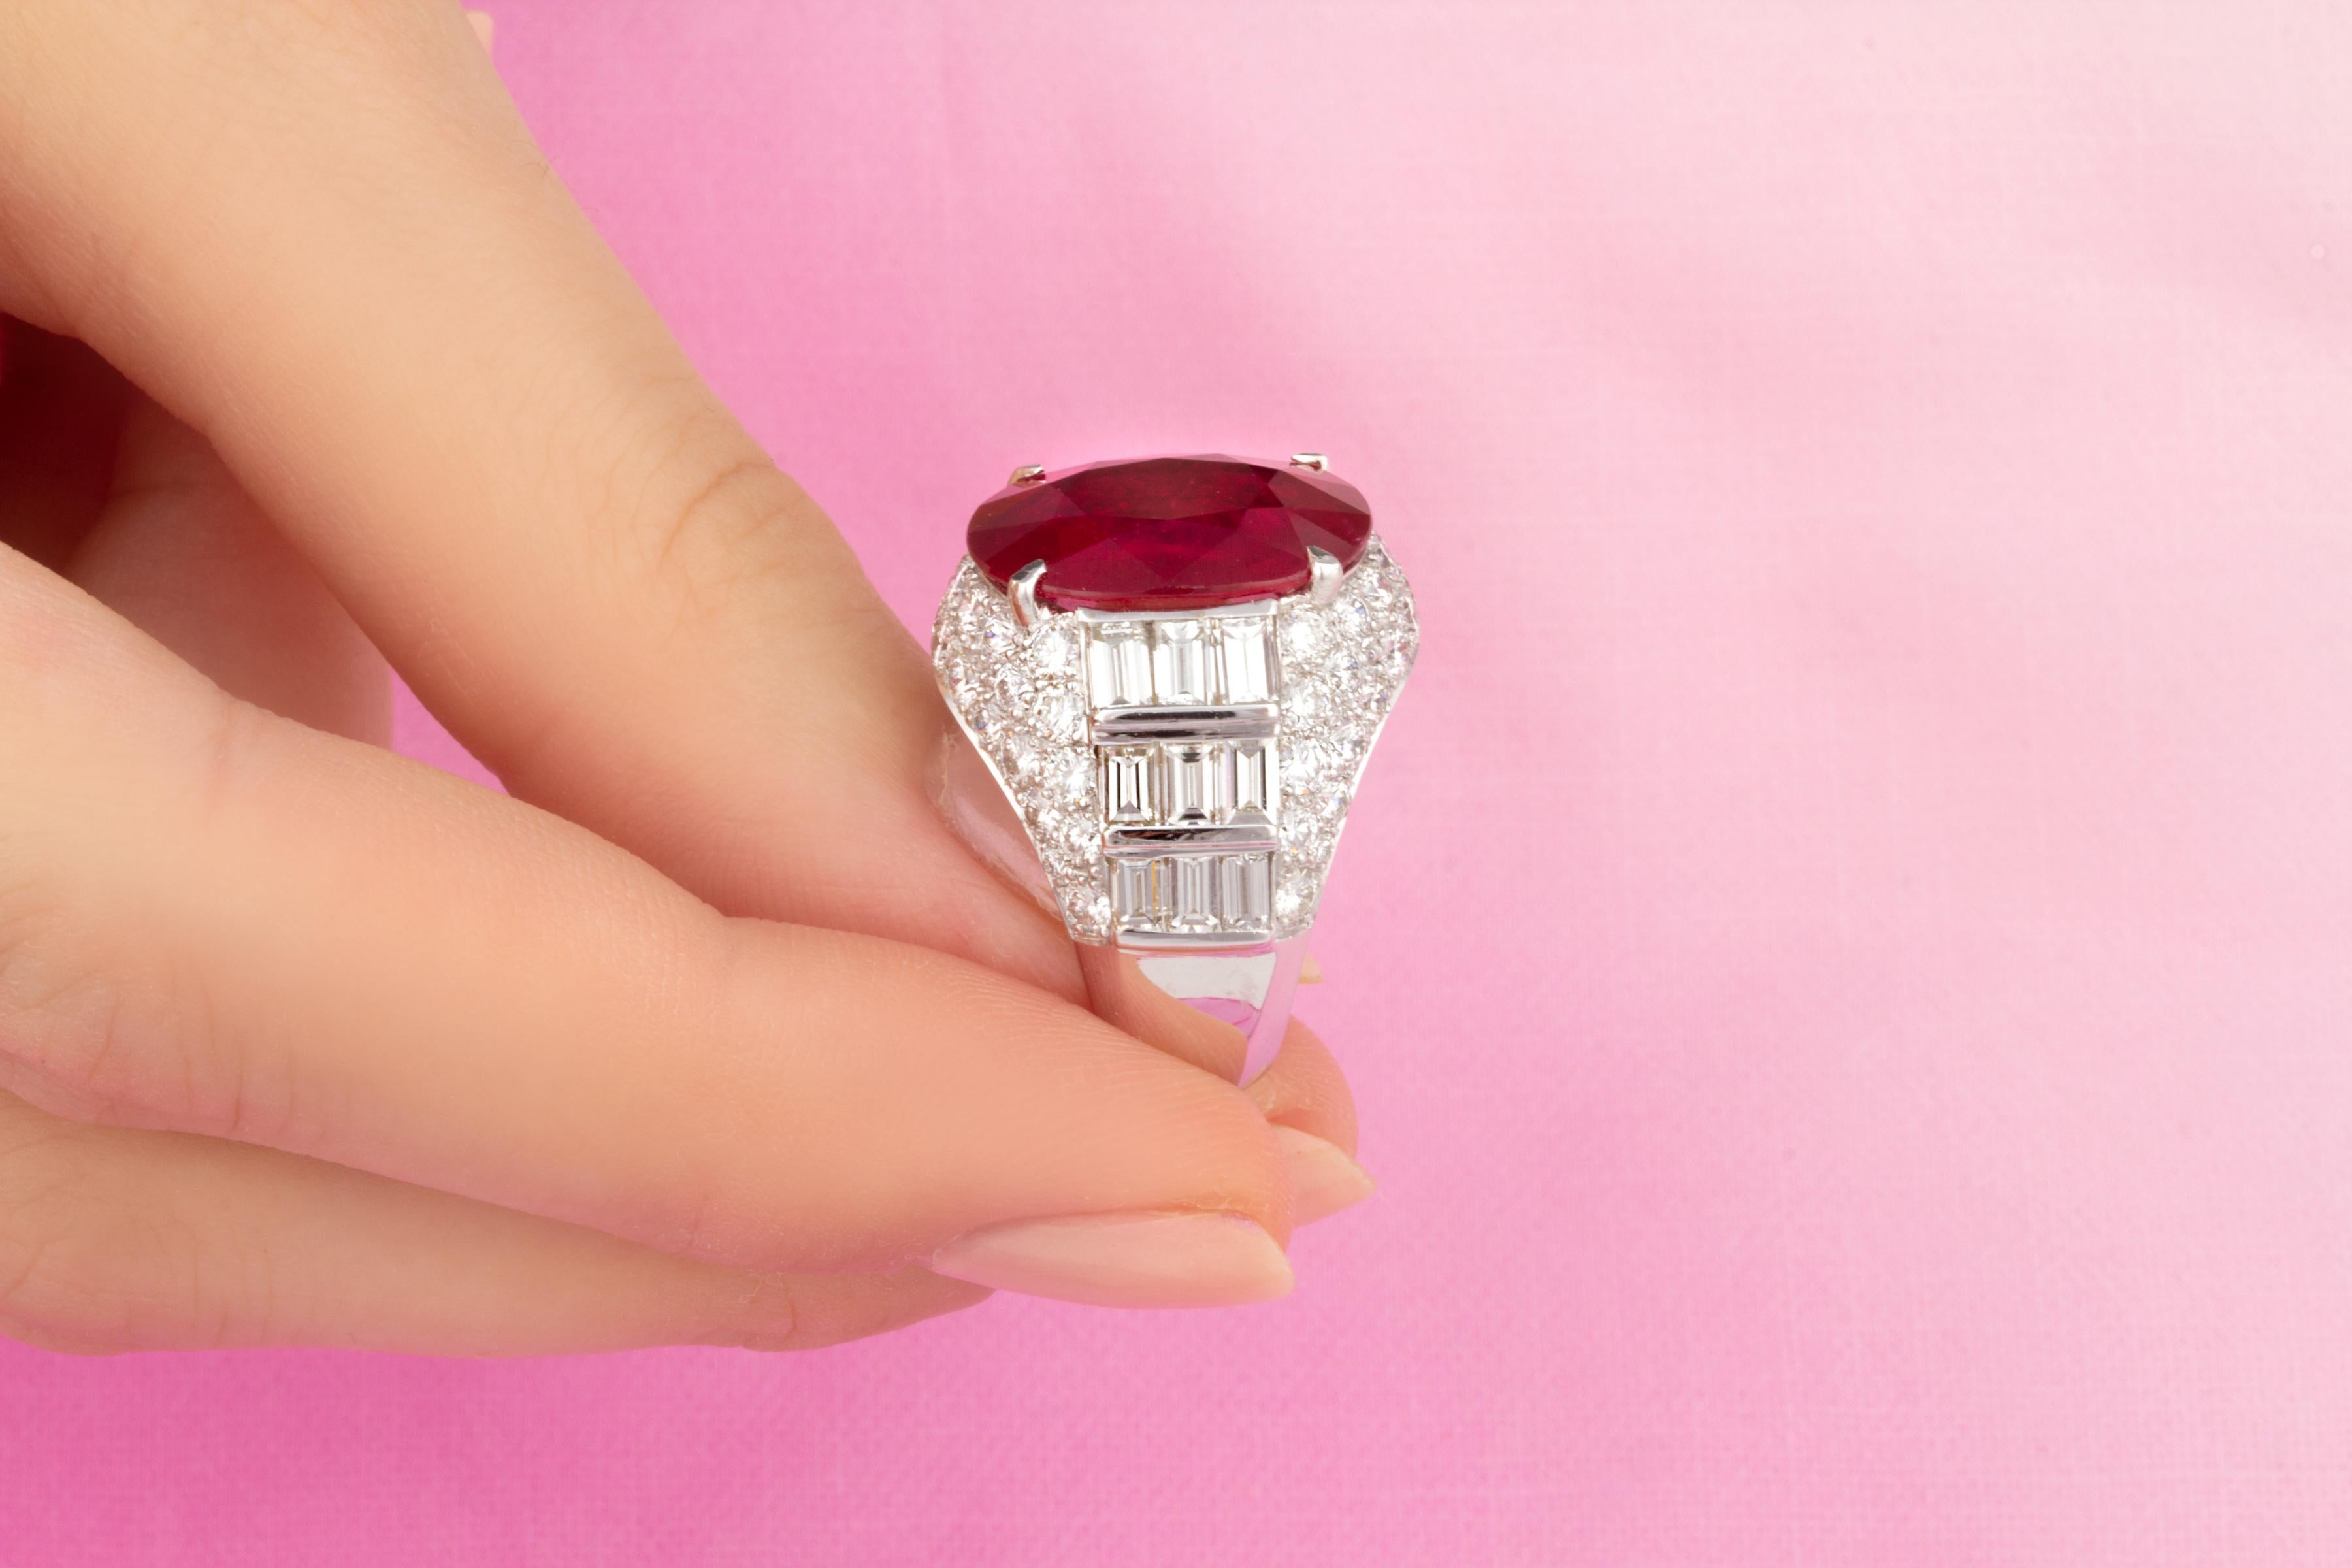 Brilliant Cut Ella Gafter 9.08 Carat Ruby Diamond Ring For Sale